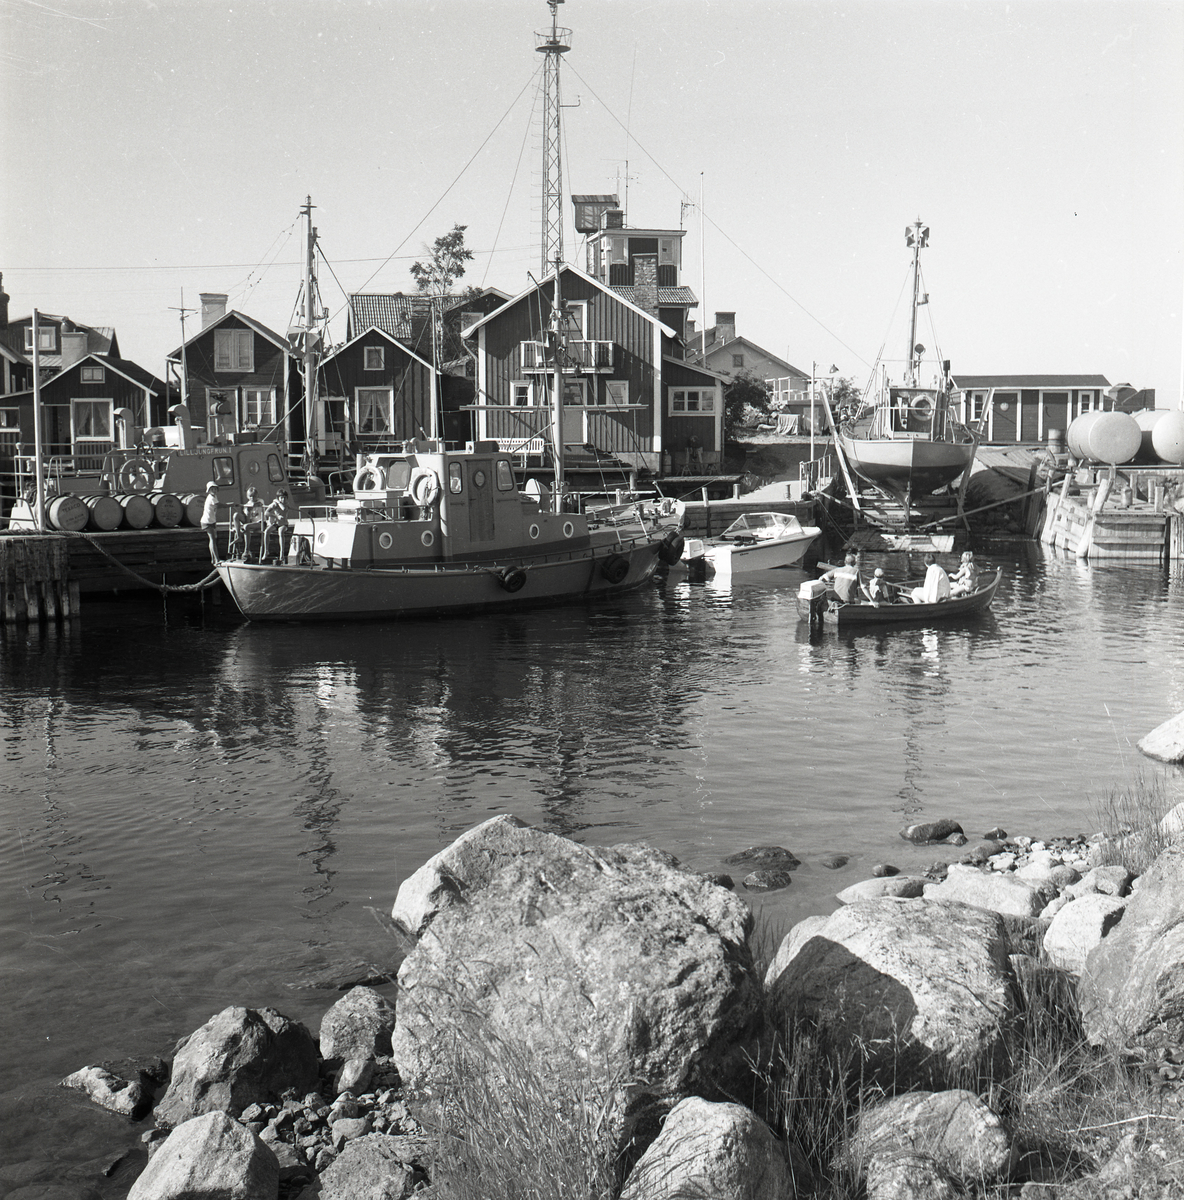 Båthamn i Söderhamn med stora och små båtar, i bakgrunden syns några hus.